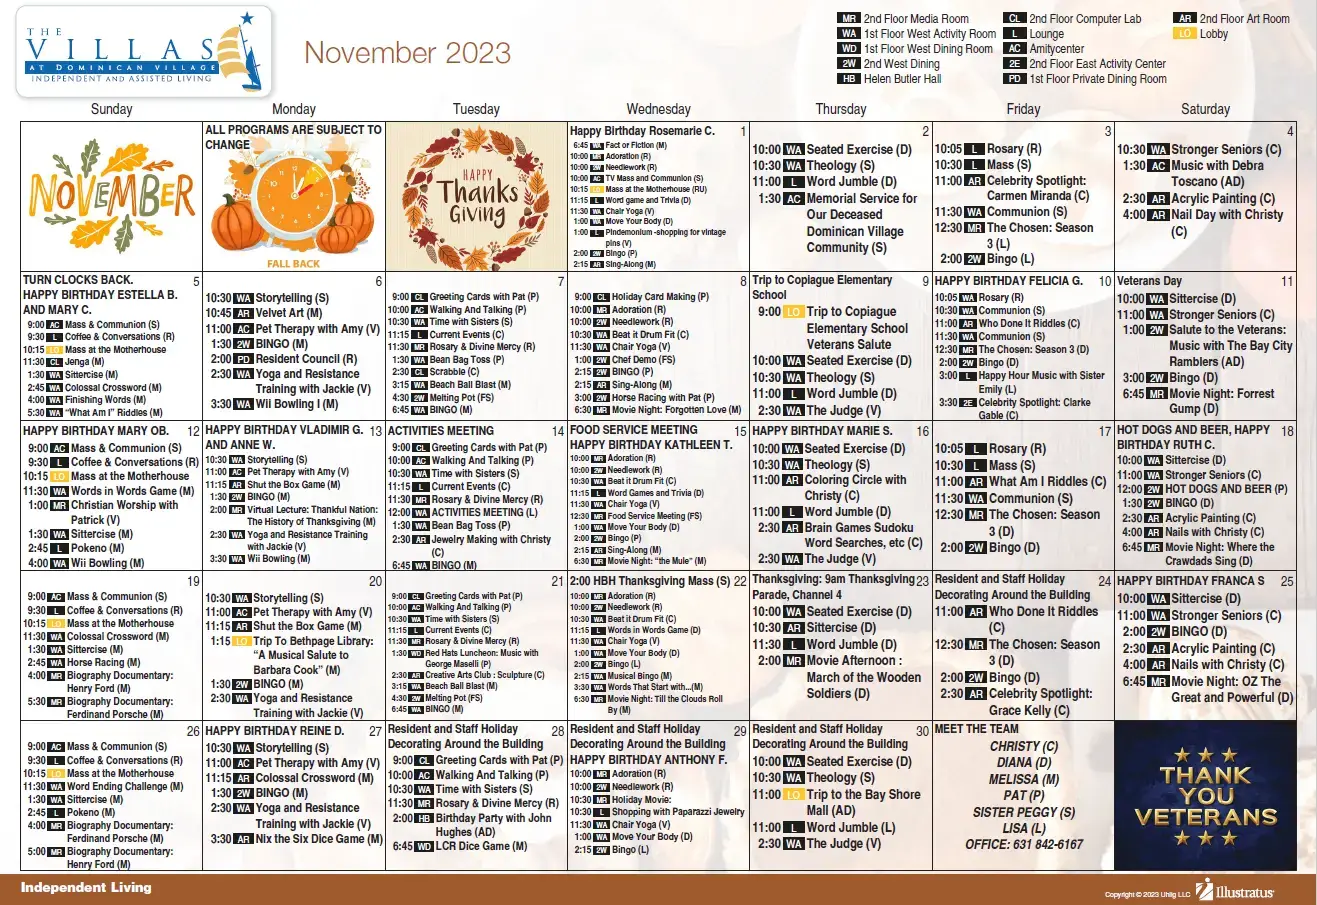 Independent living calendar for November 2023